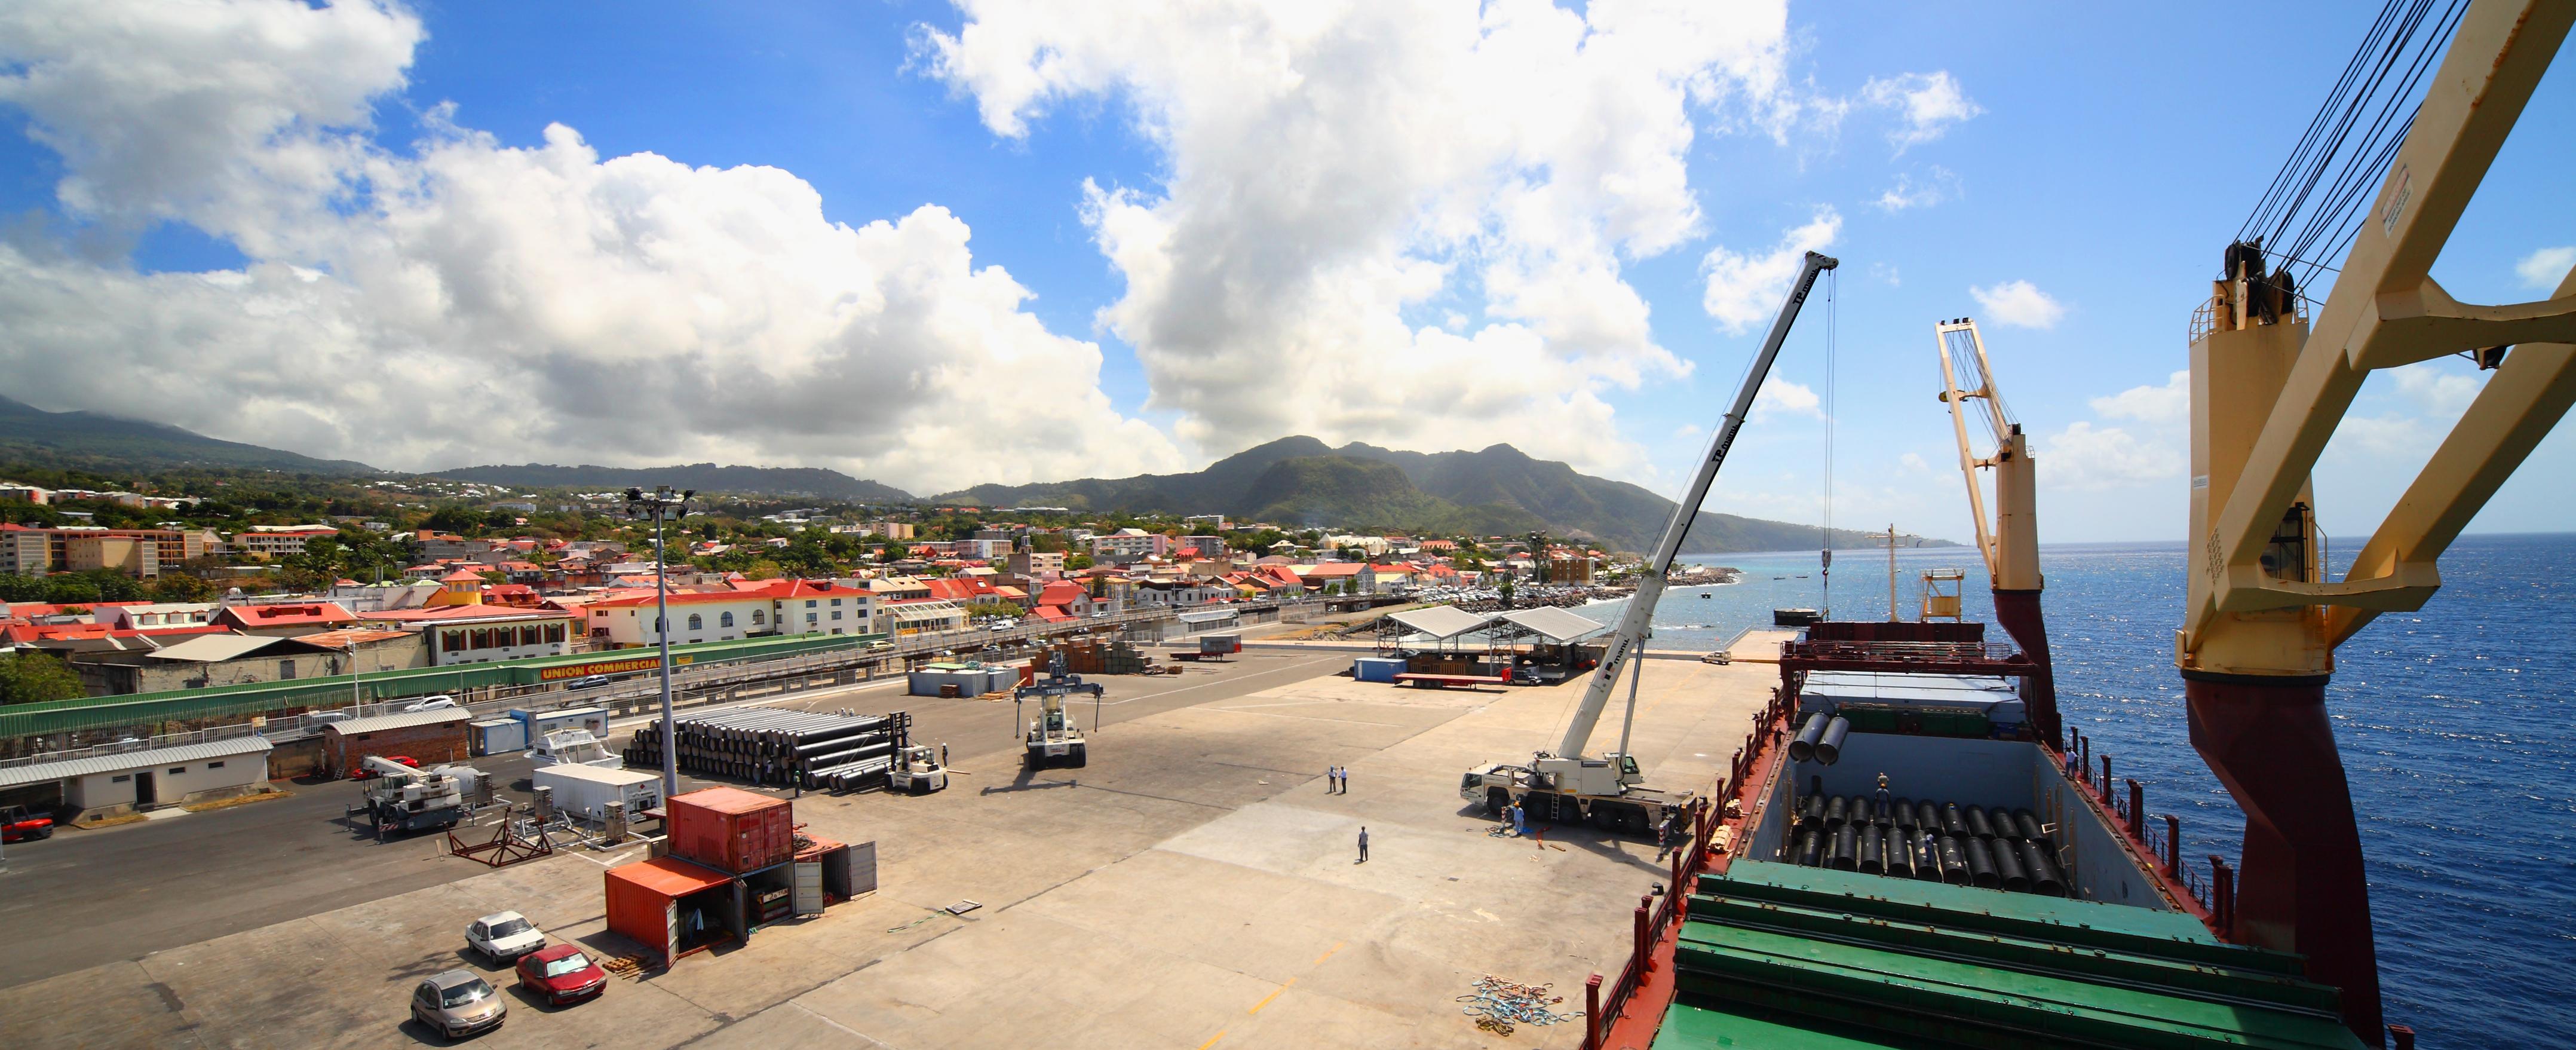     Les dockers mobilisés sur le port de Guadeloupe pour défendre deux ouvriers

